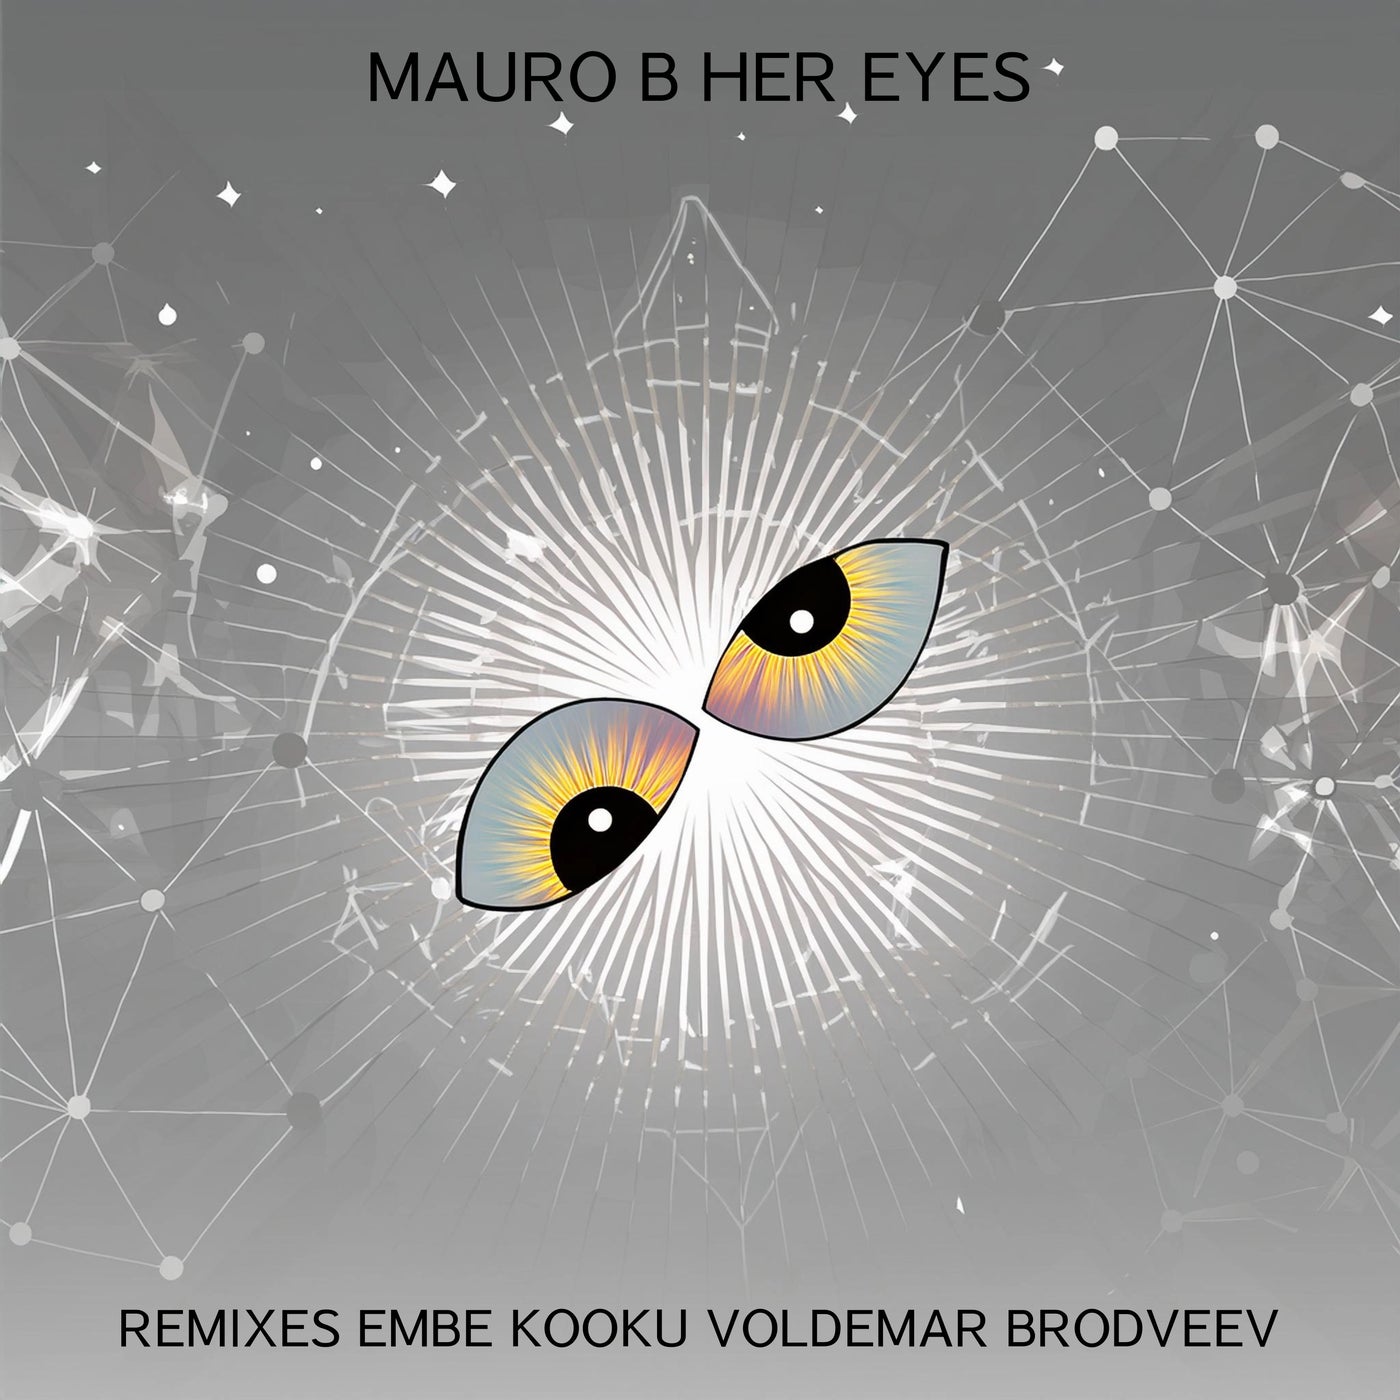 Her Eyes Remixes